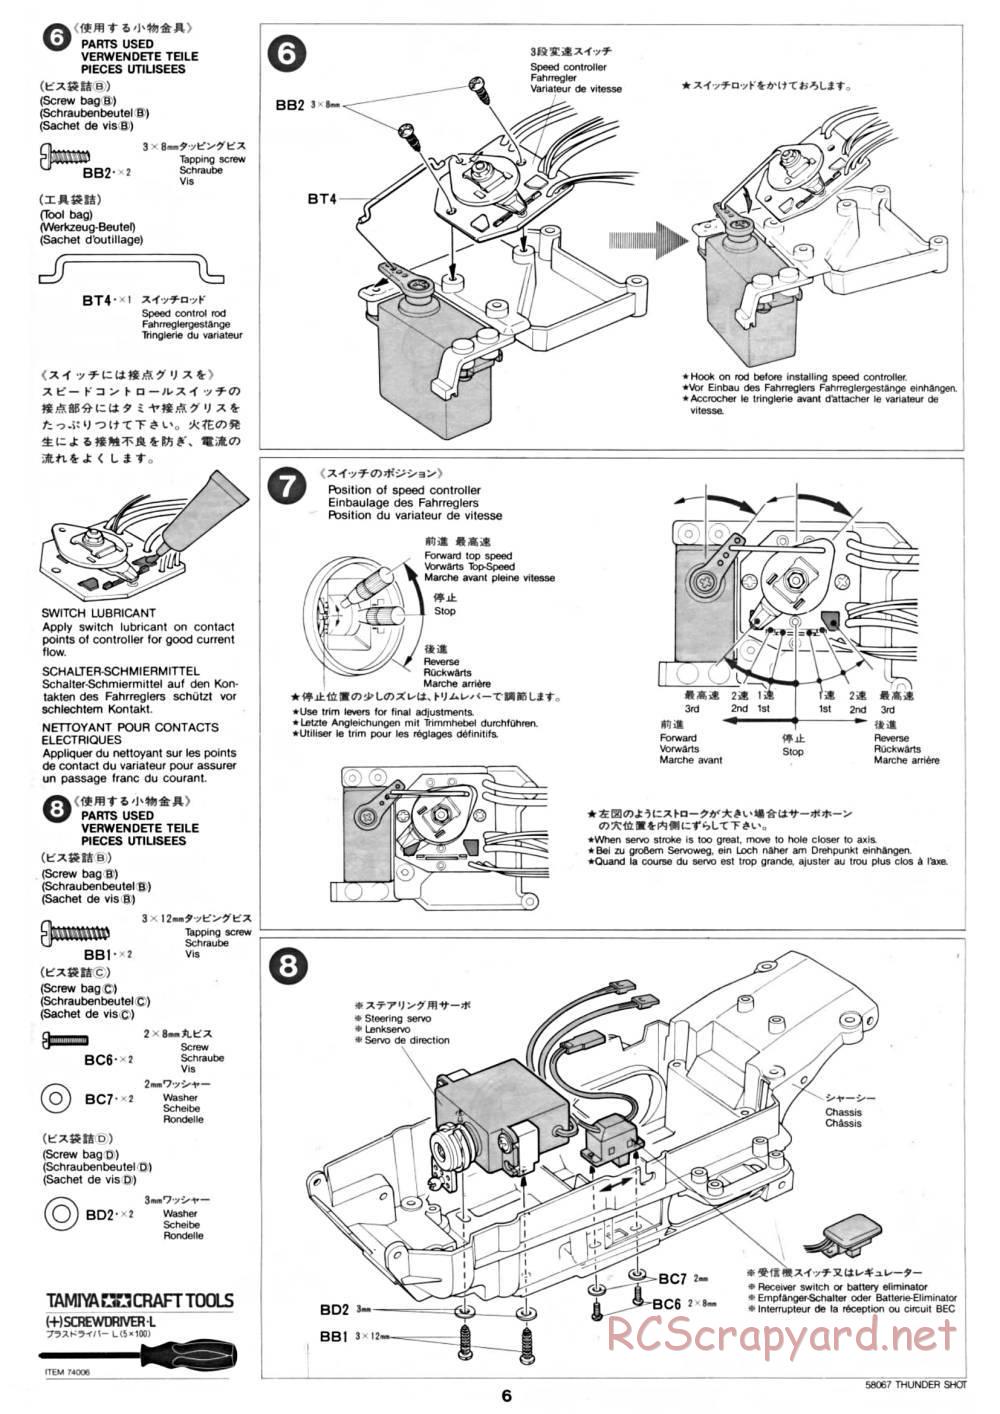 Tamiya - Thunder Shot - 58067 - Manual - Page 6